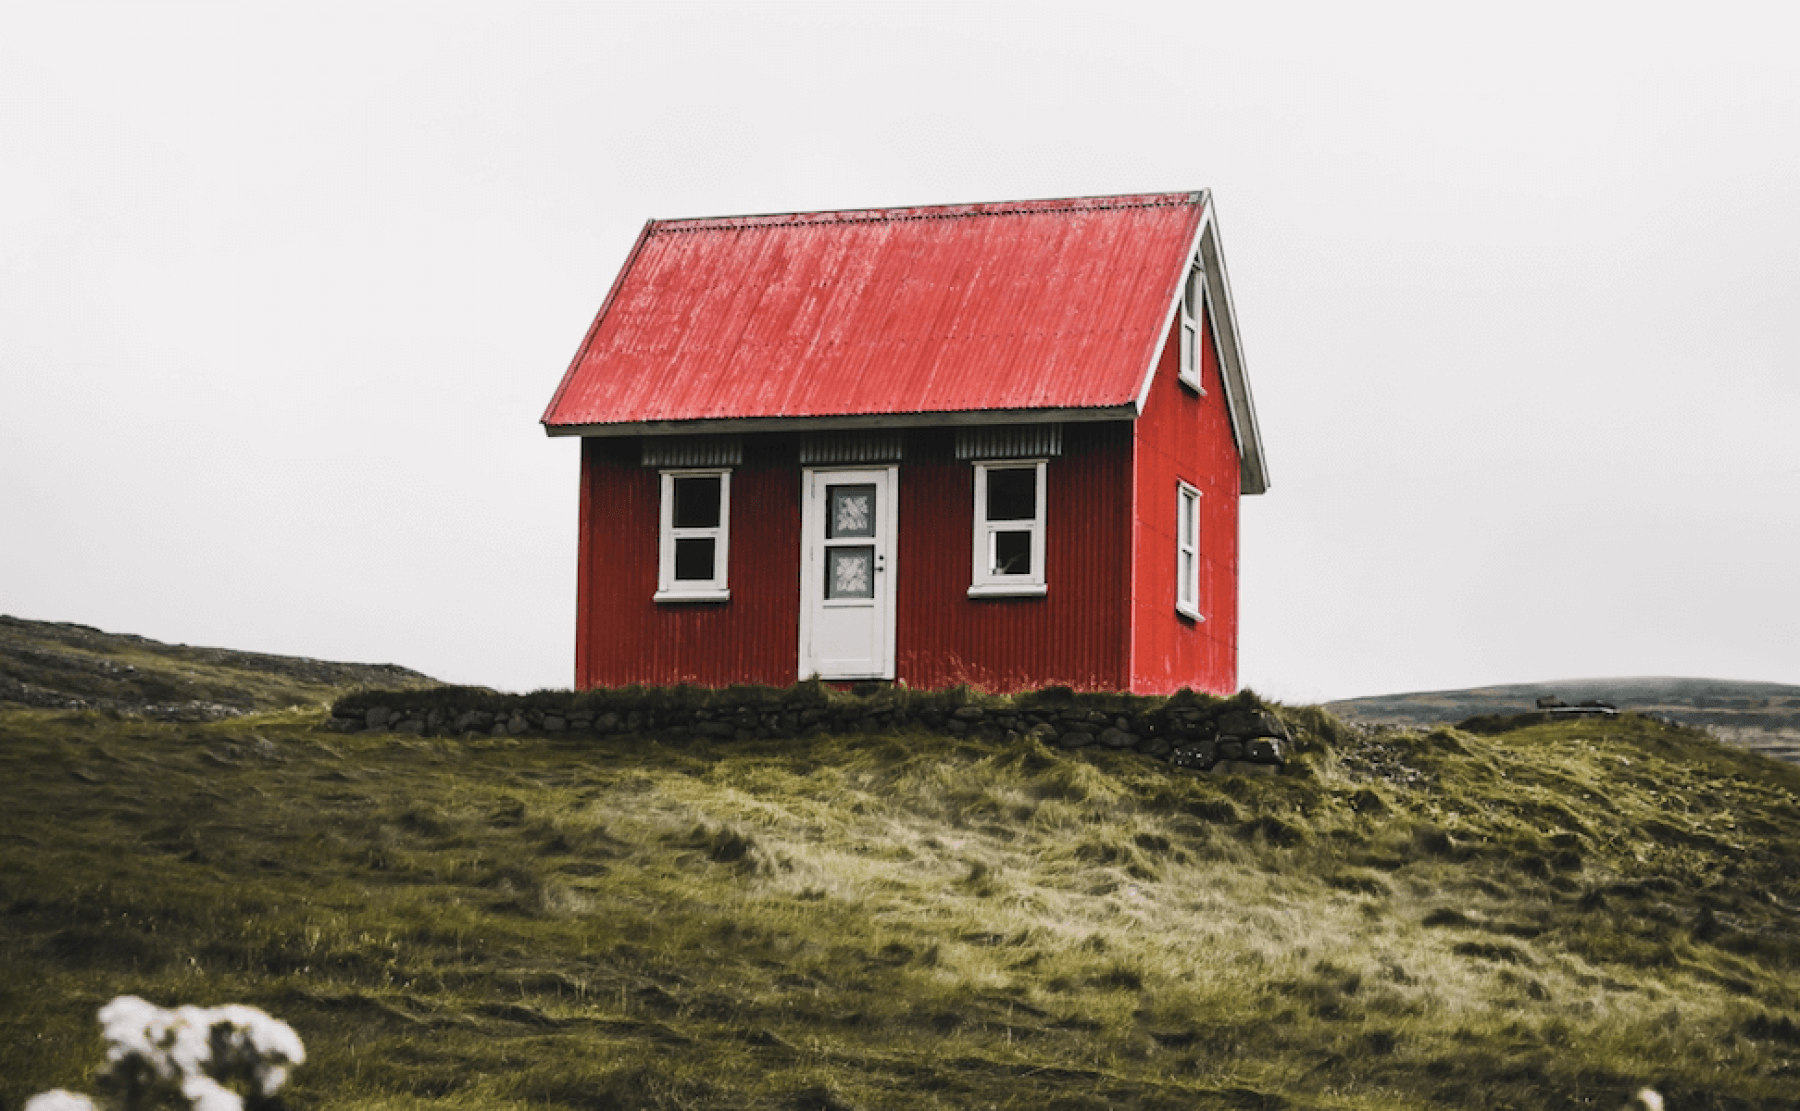 Rött hus med vita knutar i öde landskap